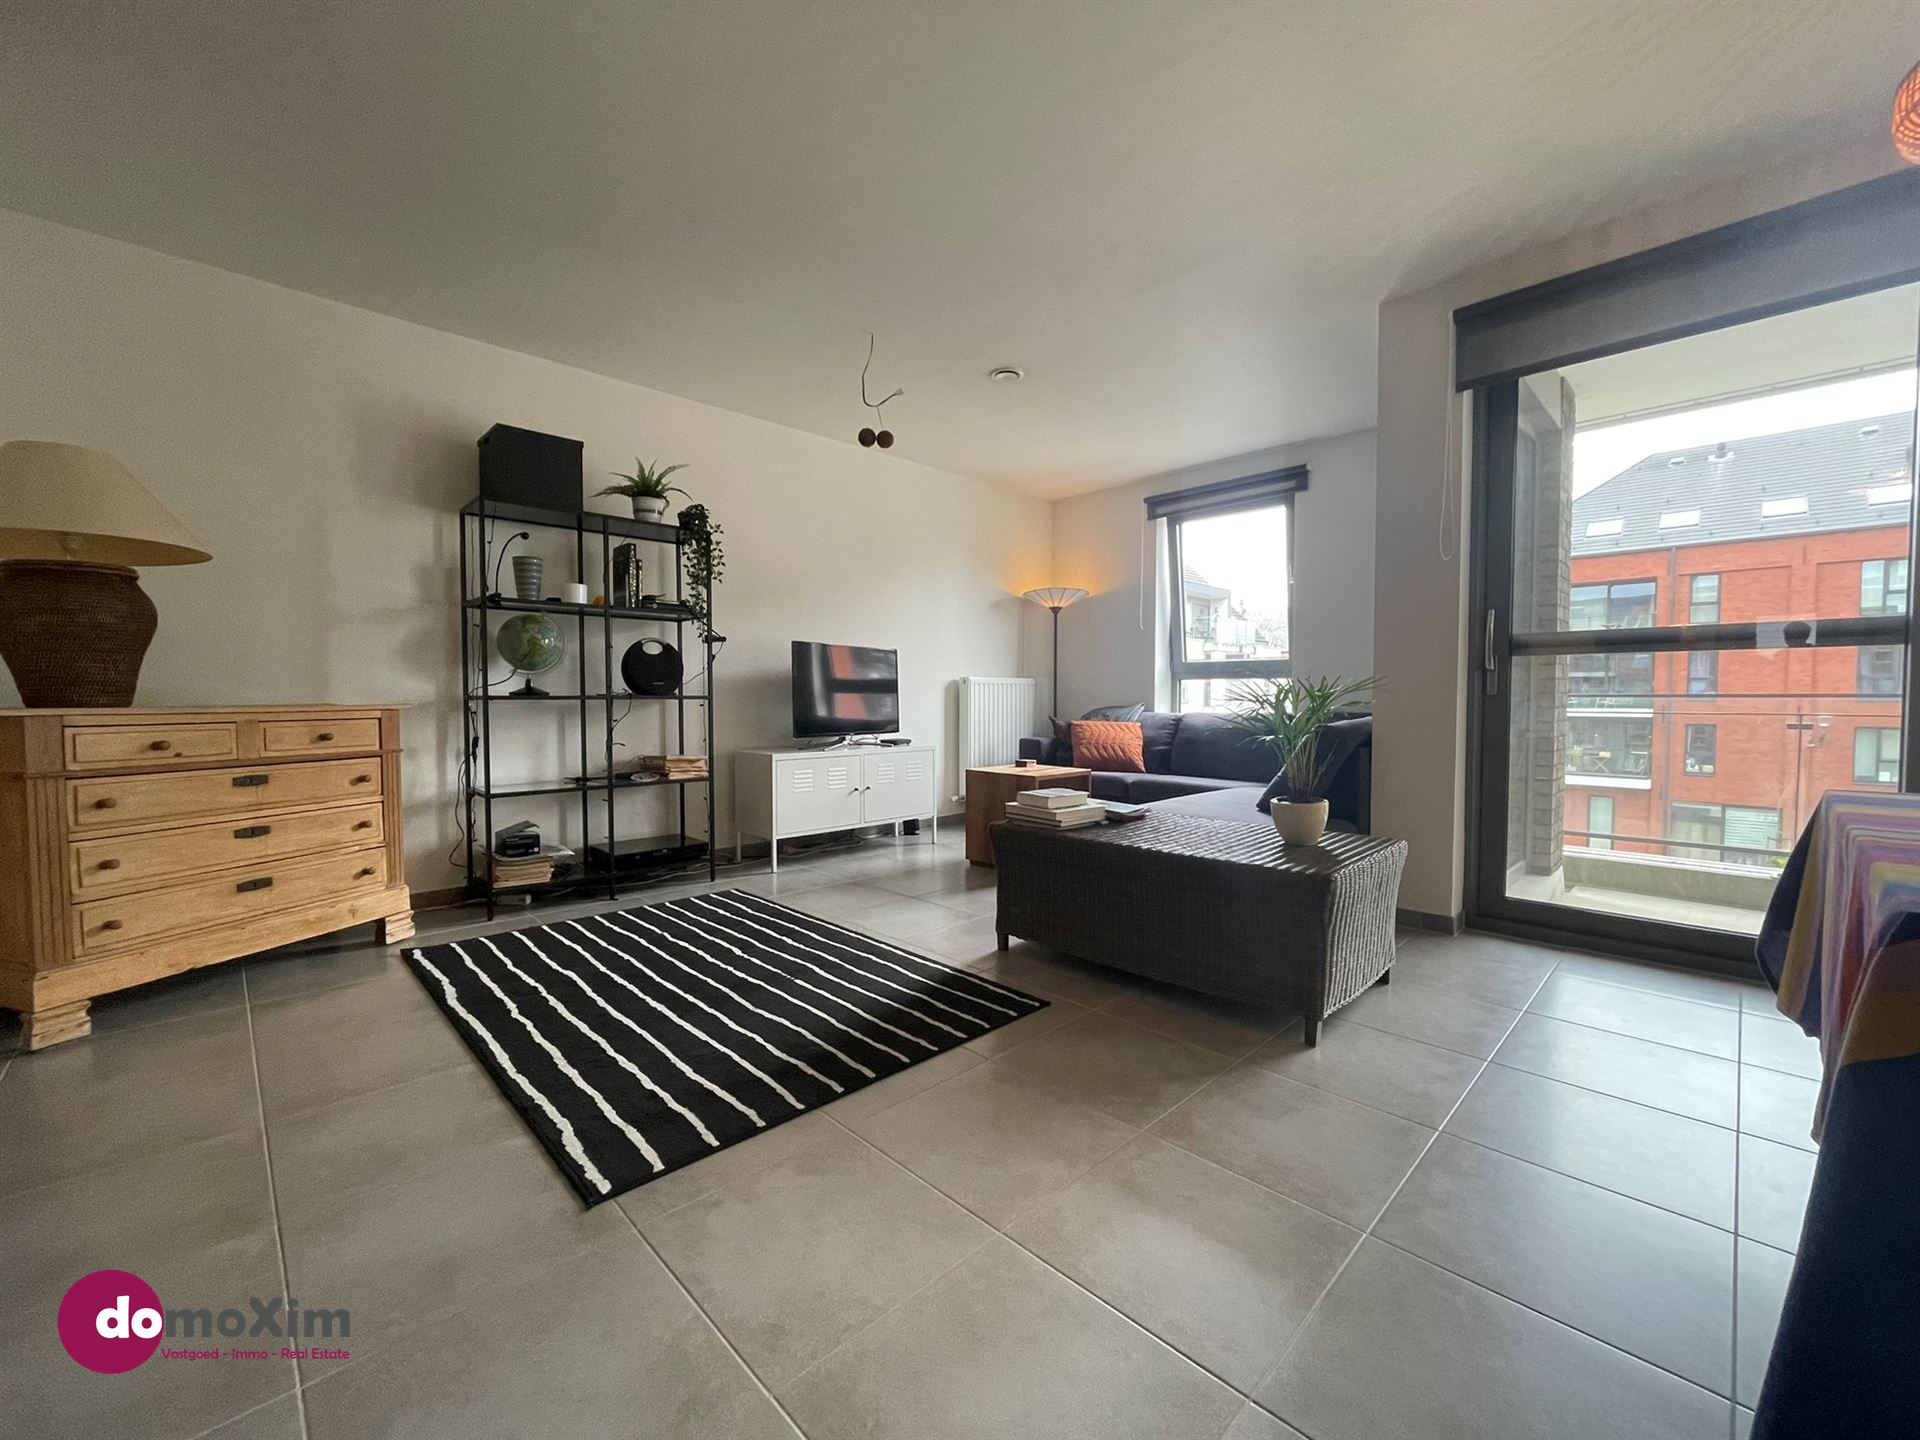 Lichtrijk appartement met 2 slaapkamers in hartje Boortmeerbeek foto 1